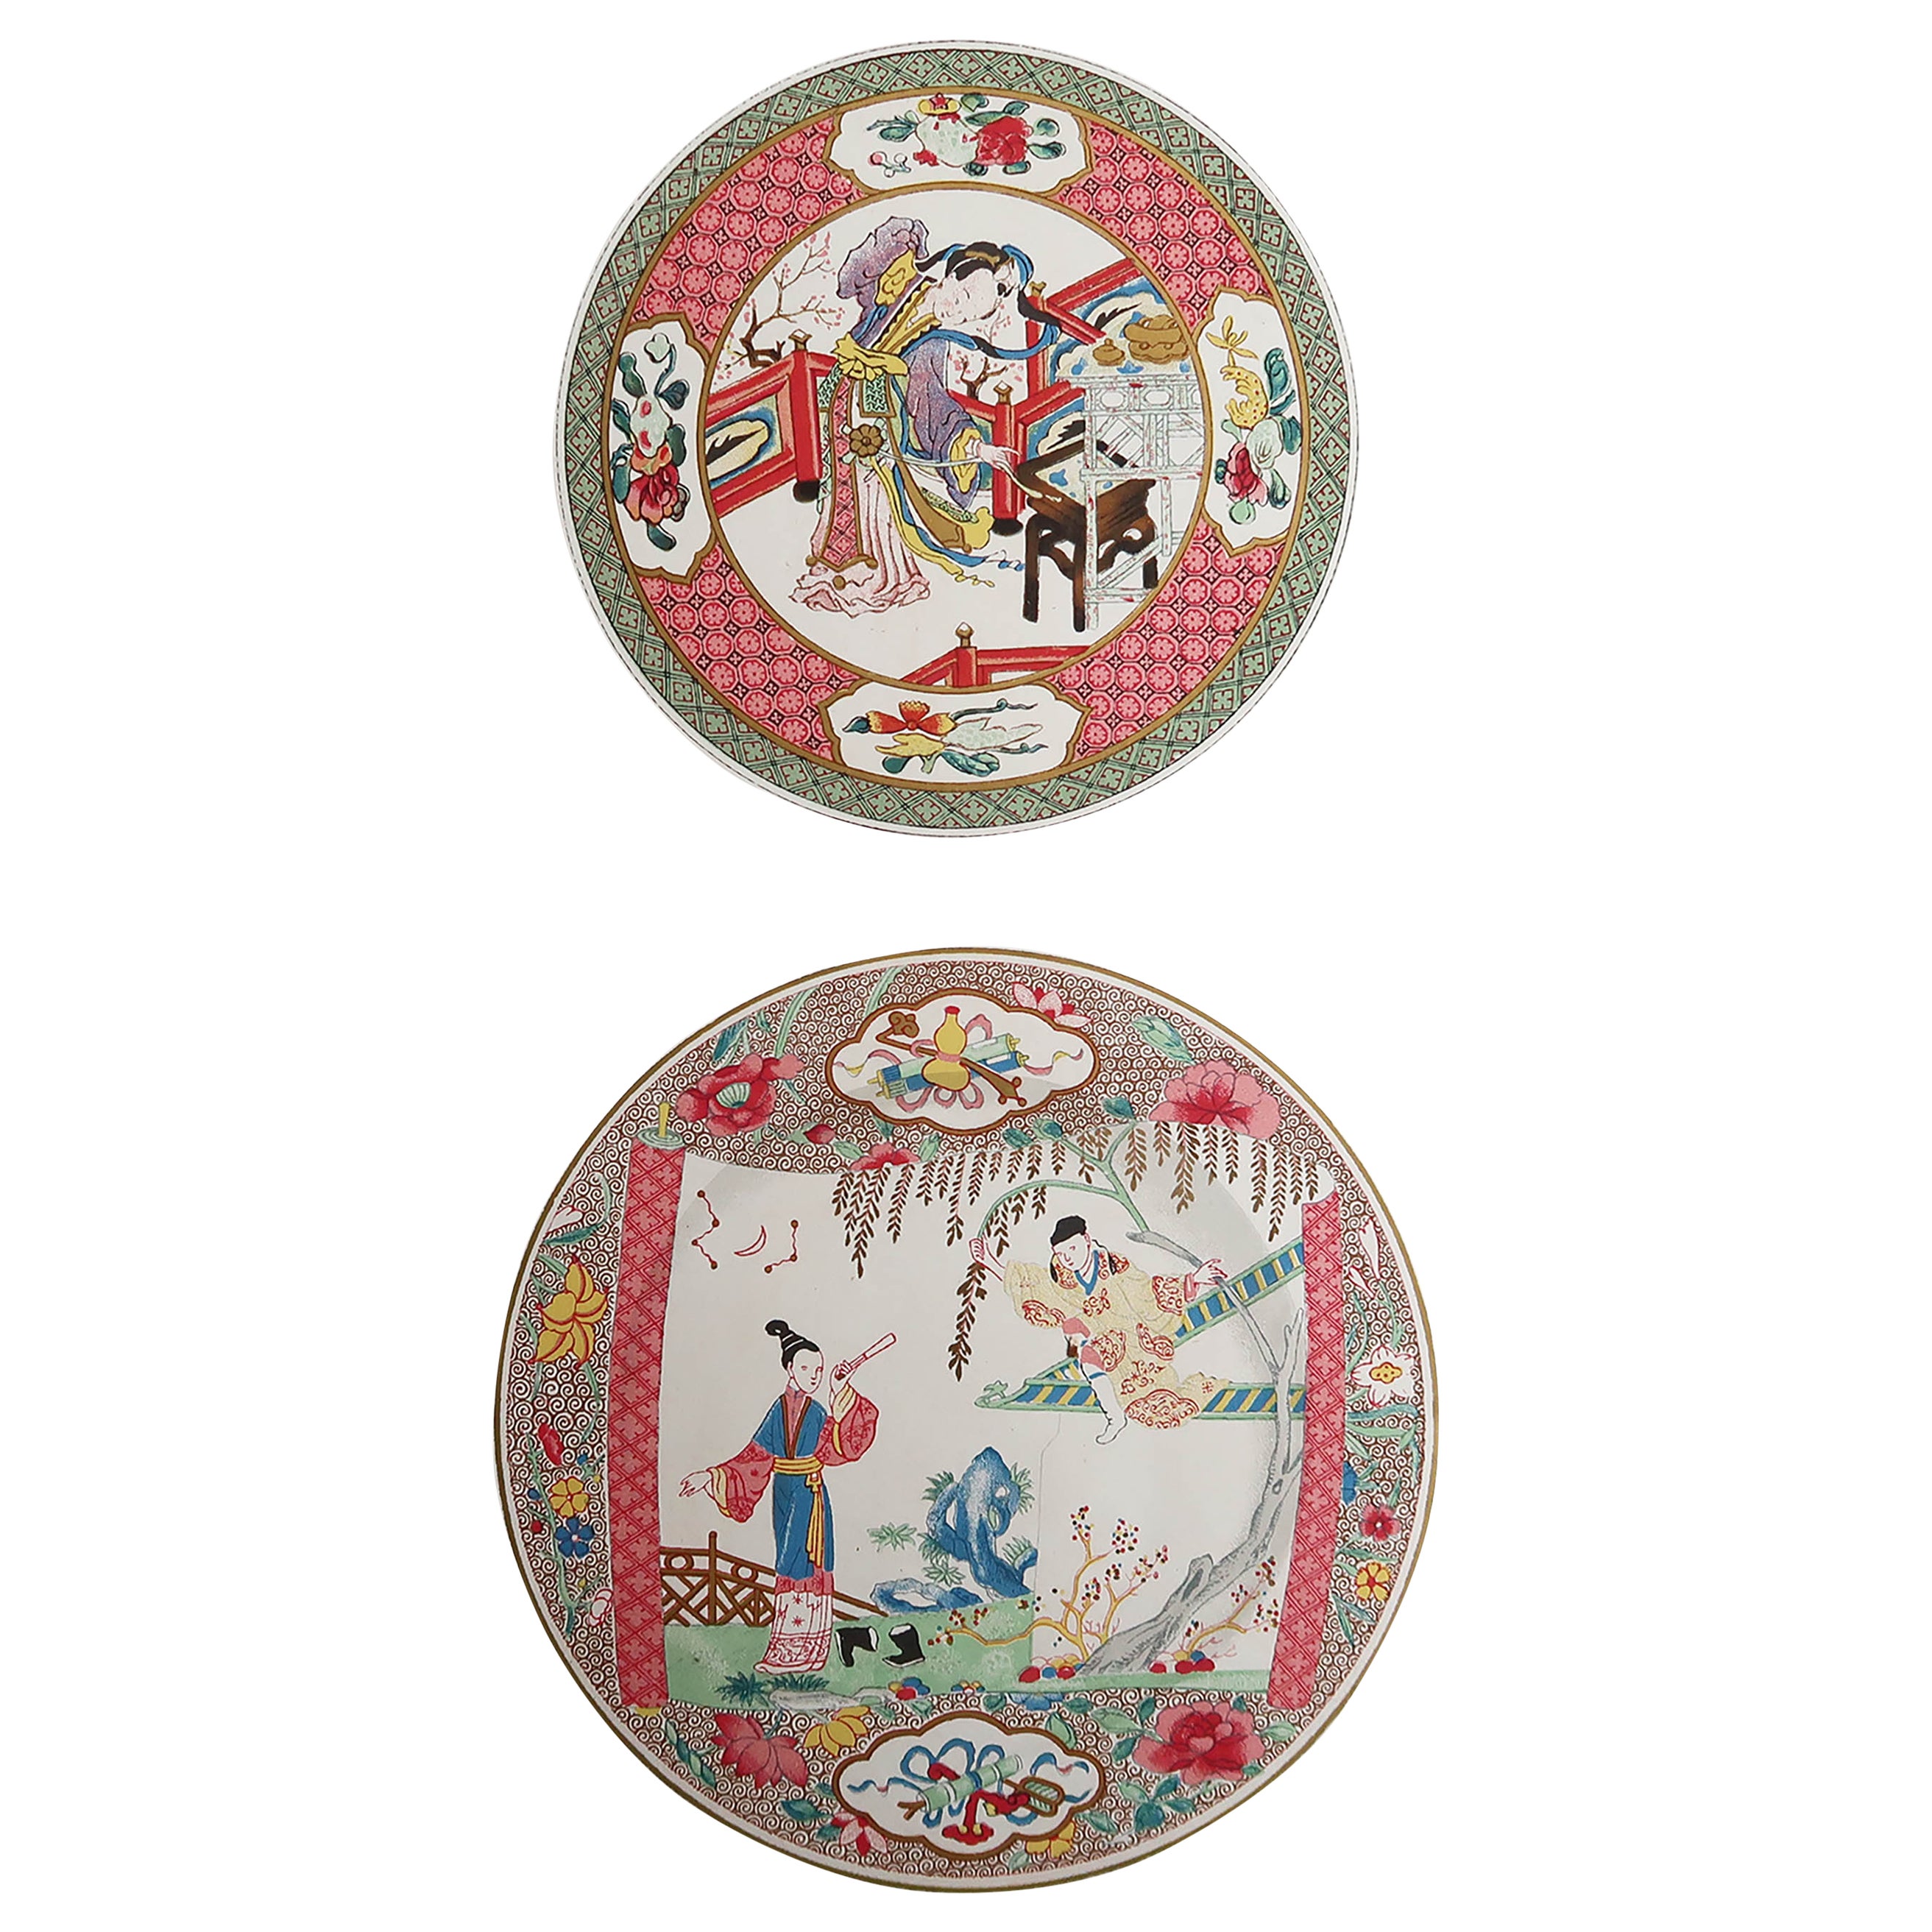 Impression originale et ancienne d'une assiette chinoise et japonaise, France, vers 1860